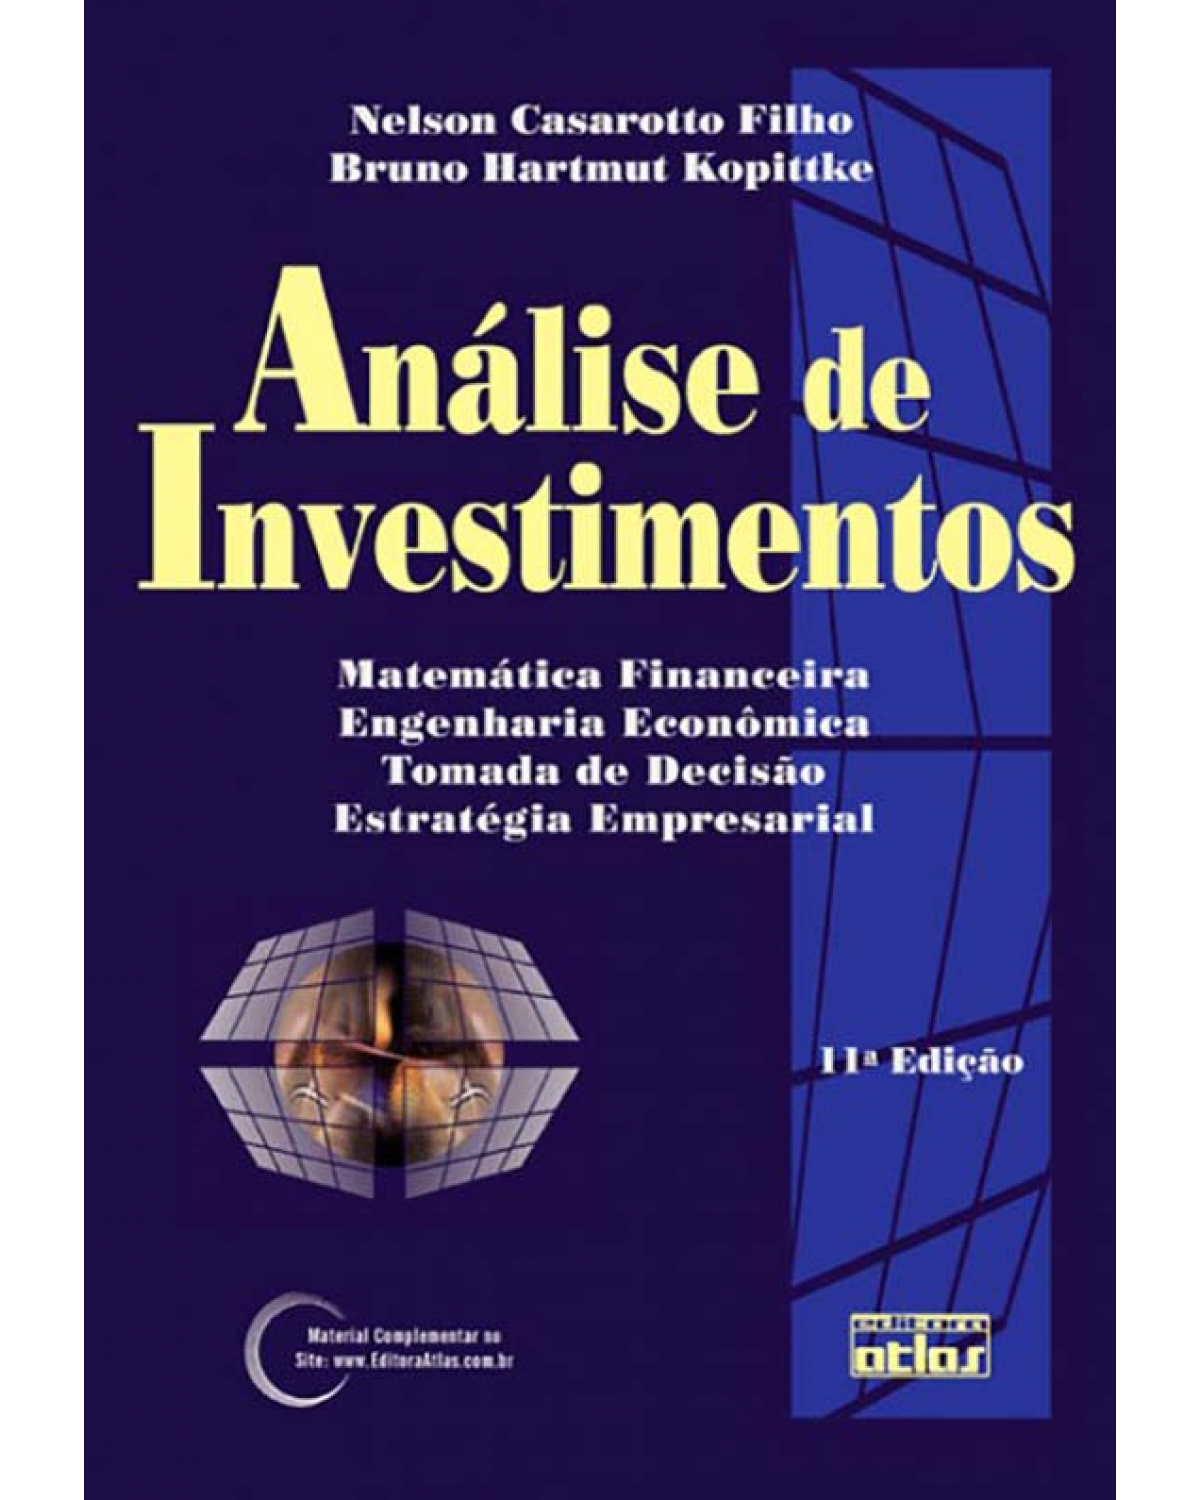 Análise de investimentos - Matemática financeira, engenharia econômica, tomada de decisão, estratégia empresarial - 11ª Edição | 2010